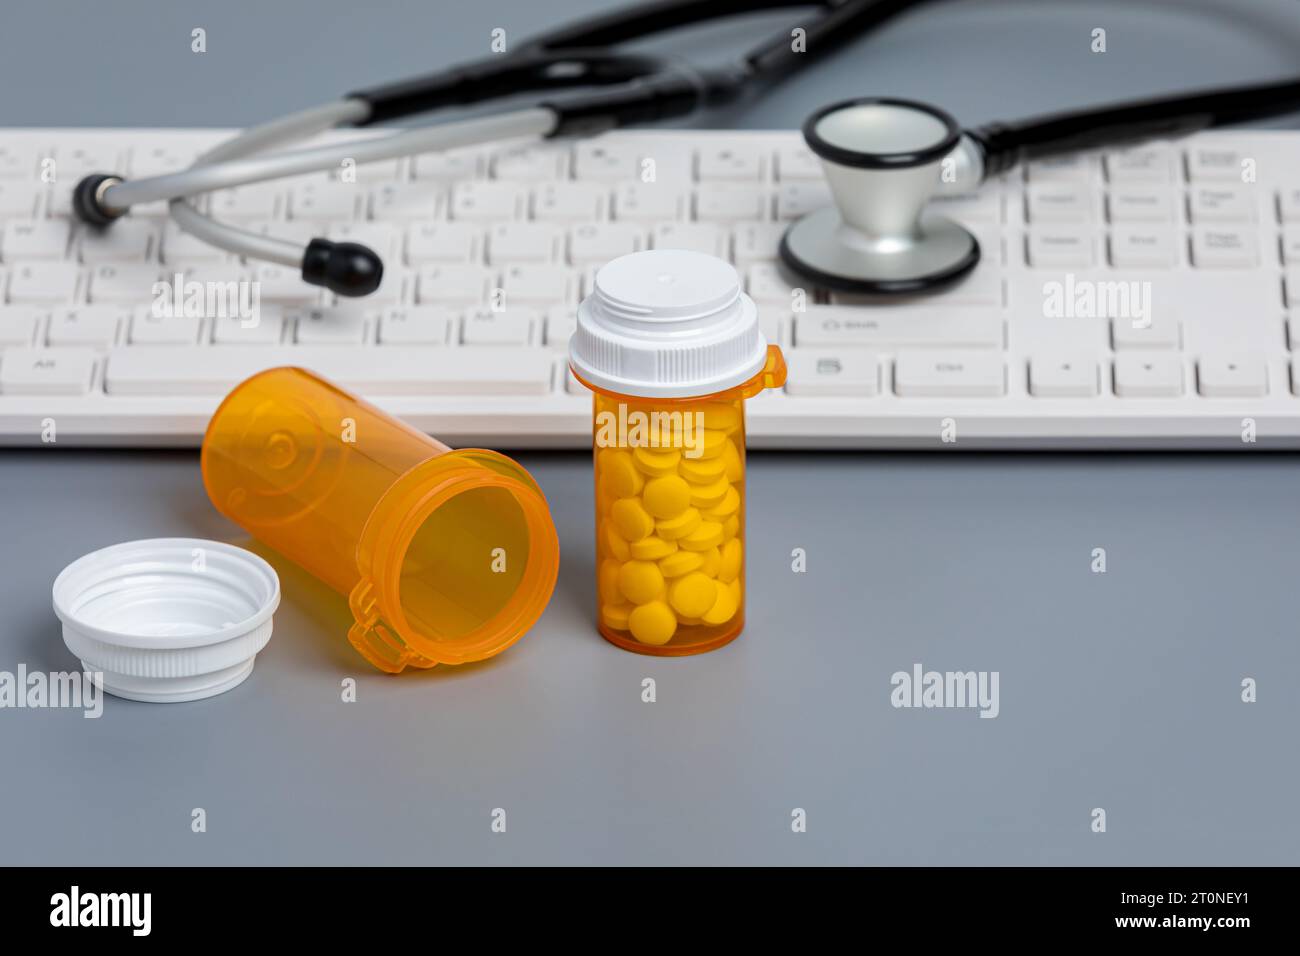 Verschreibungspflichtige Medikamente und Medikamentenflaschen mit Computertastatur. Gesundheitswesen, Telemedizin und Online-Apotheke Konzept. Stockfoto